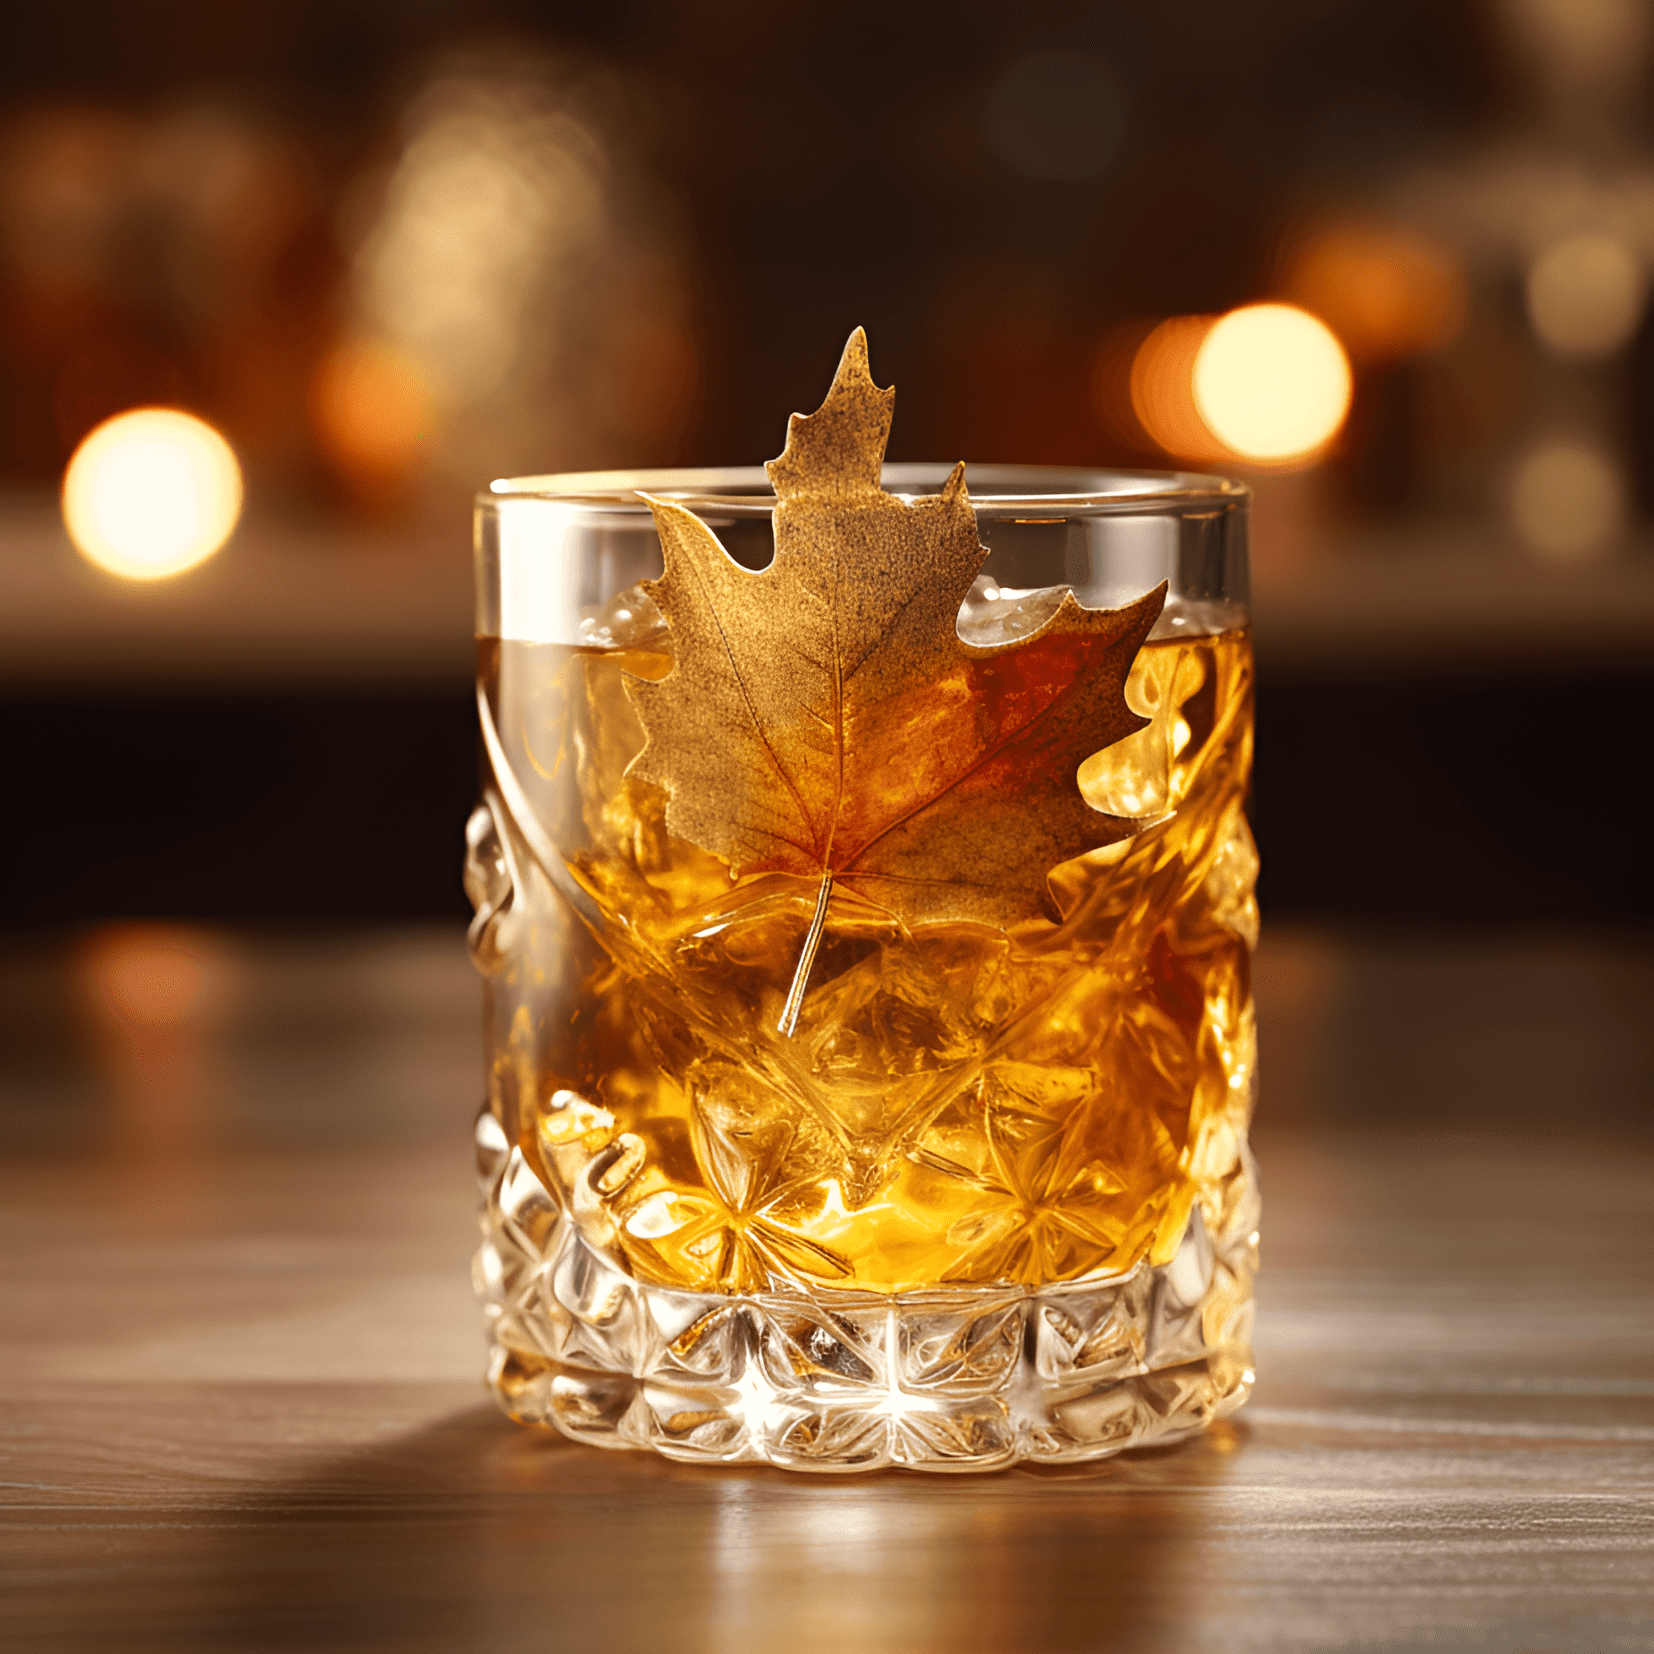 Maple Leaf Cóctel Receta - El cóctel Maple Leaf es una mezcla bien equilibrada de sabores dulces, ácidos y fuertes. El whisky proporciona una base robusta y cálida, mientras que el jarabe de arce agrega una dulzura rica. El jugo de limón aporta una acidez refrescante y el sabor general es suave y satisfactorio.